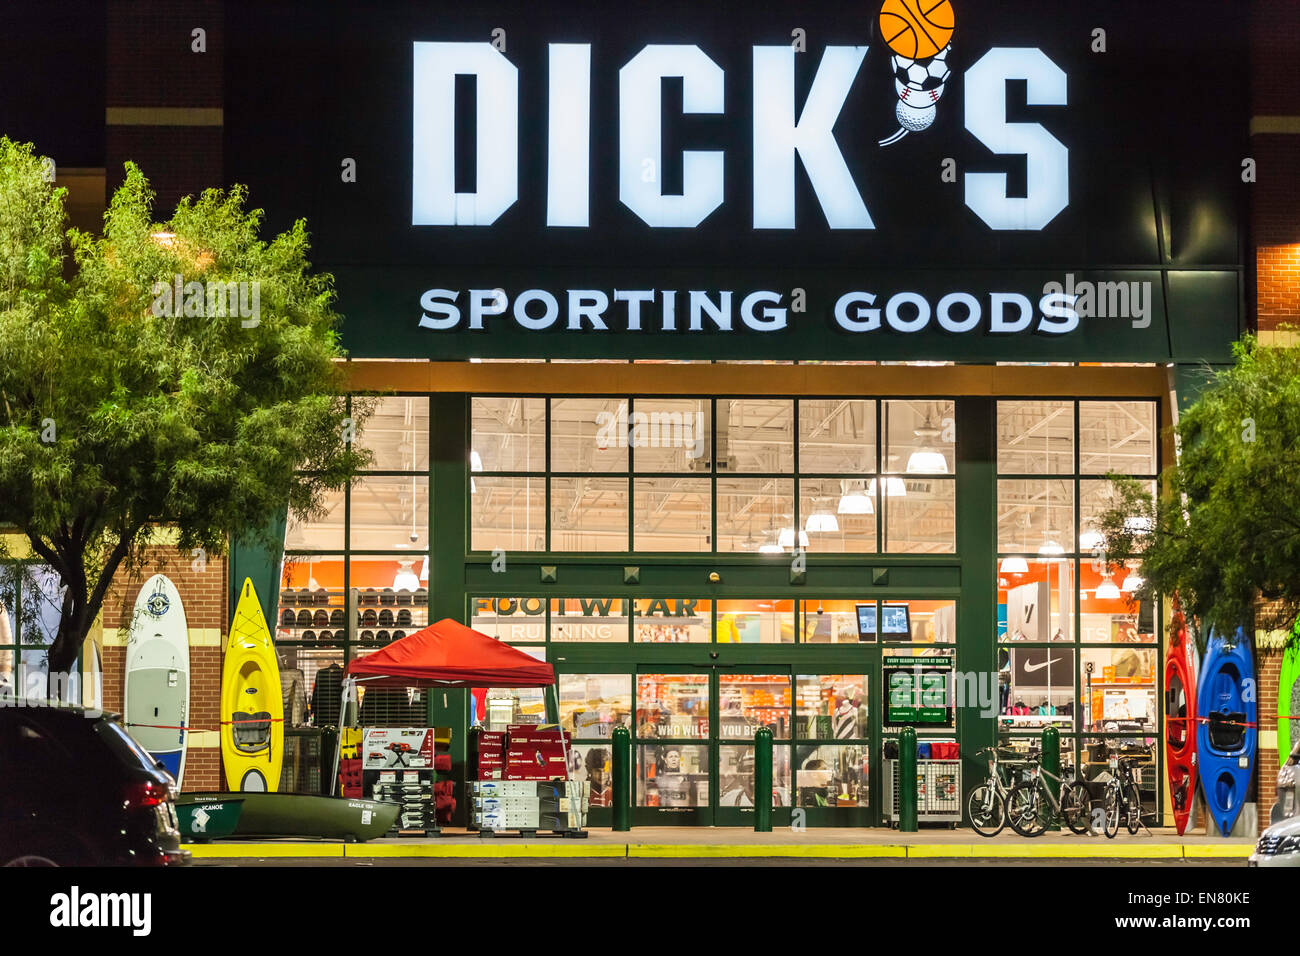 Dicks sporting goods cumming ga